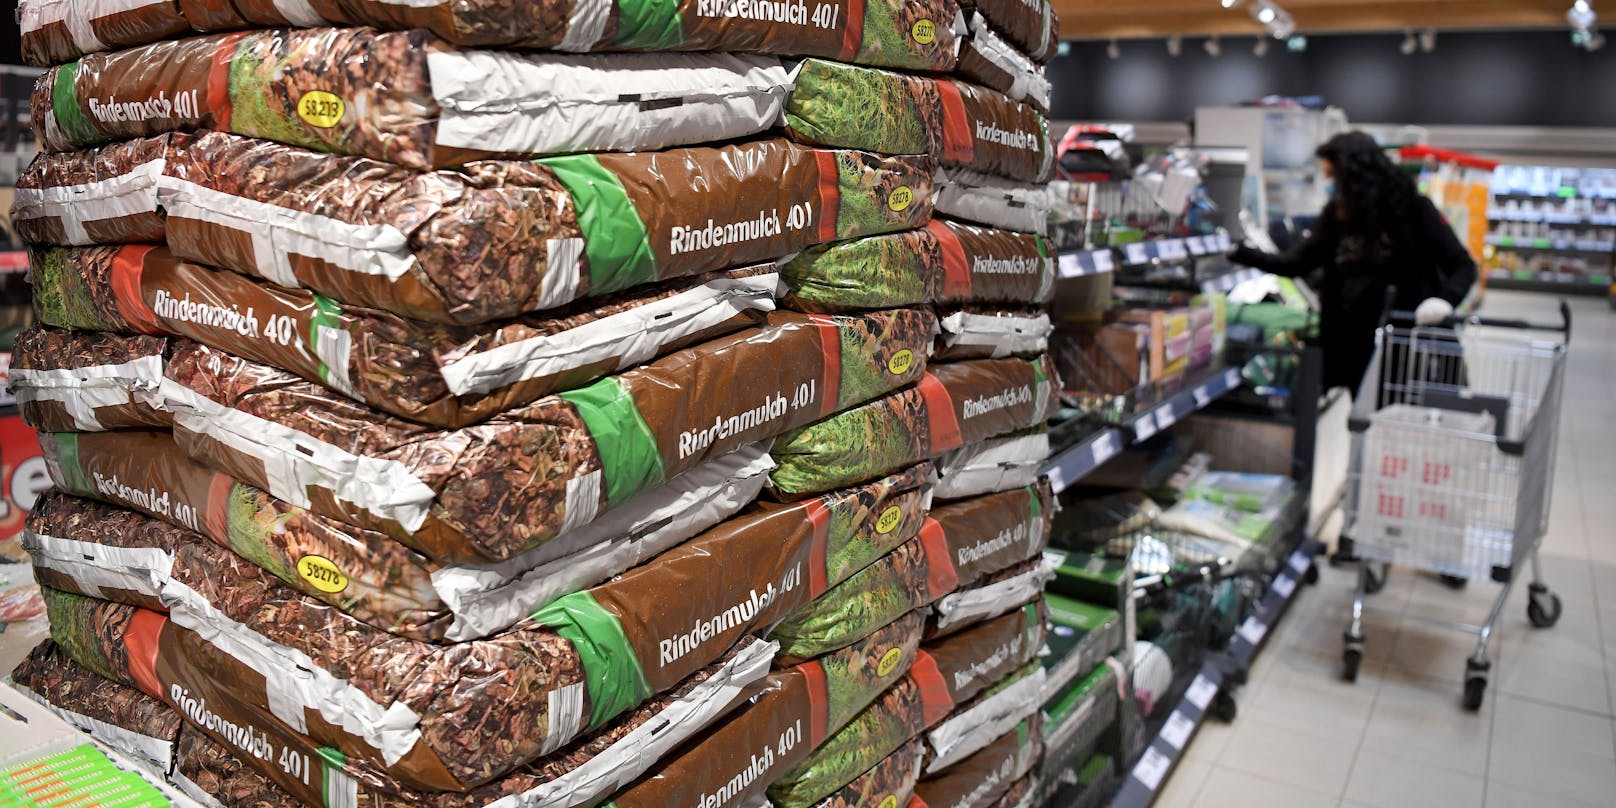 Saisonales Warenangebot in einem Wiener Supermarkt: Anders als im ersten Lockdown 2020 bleibt das Warenangebot nicht eingeschränkt